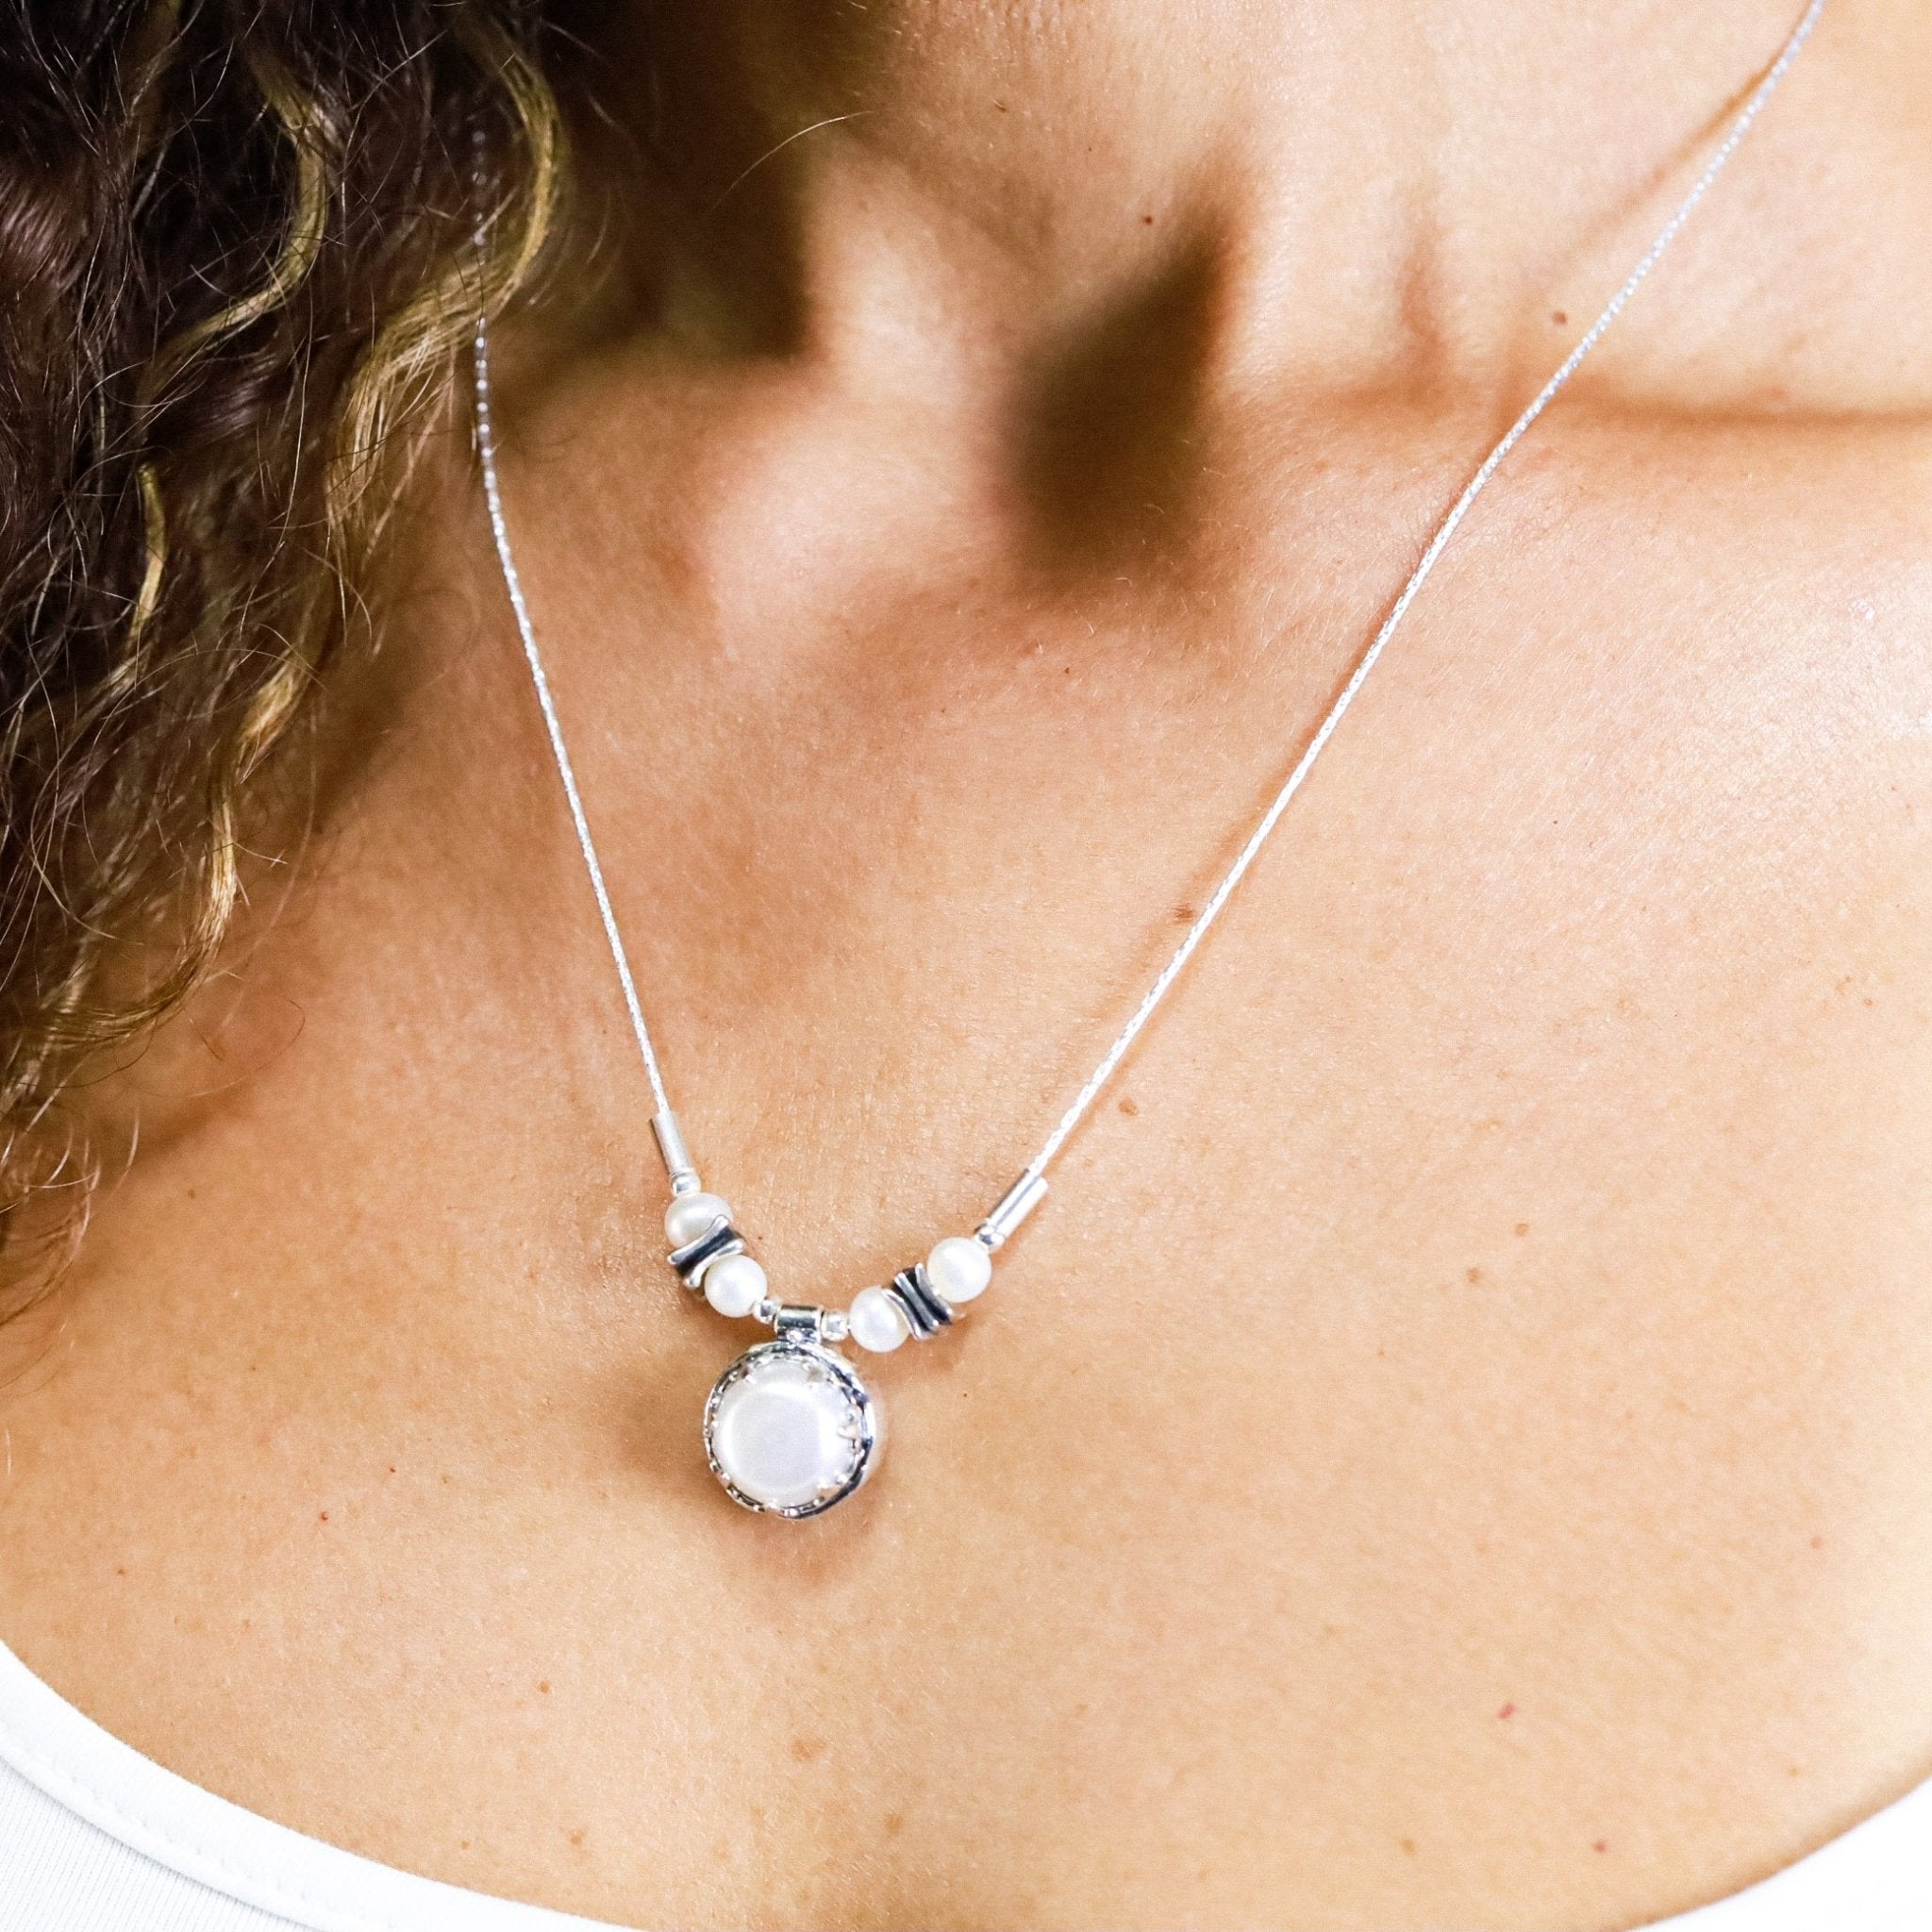 La Perla Pearl Necklace - Revital Exotic Jewelry & Apparel